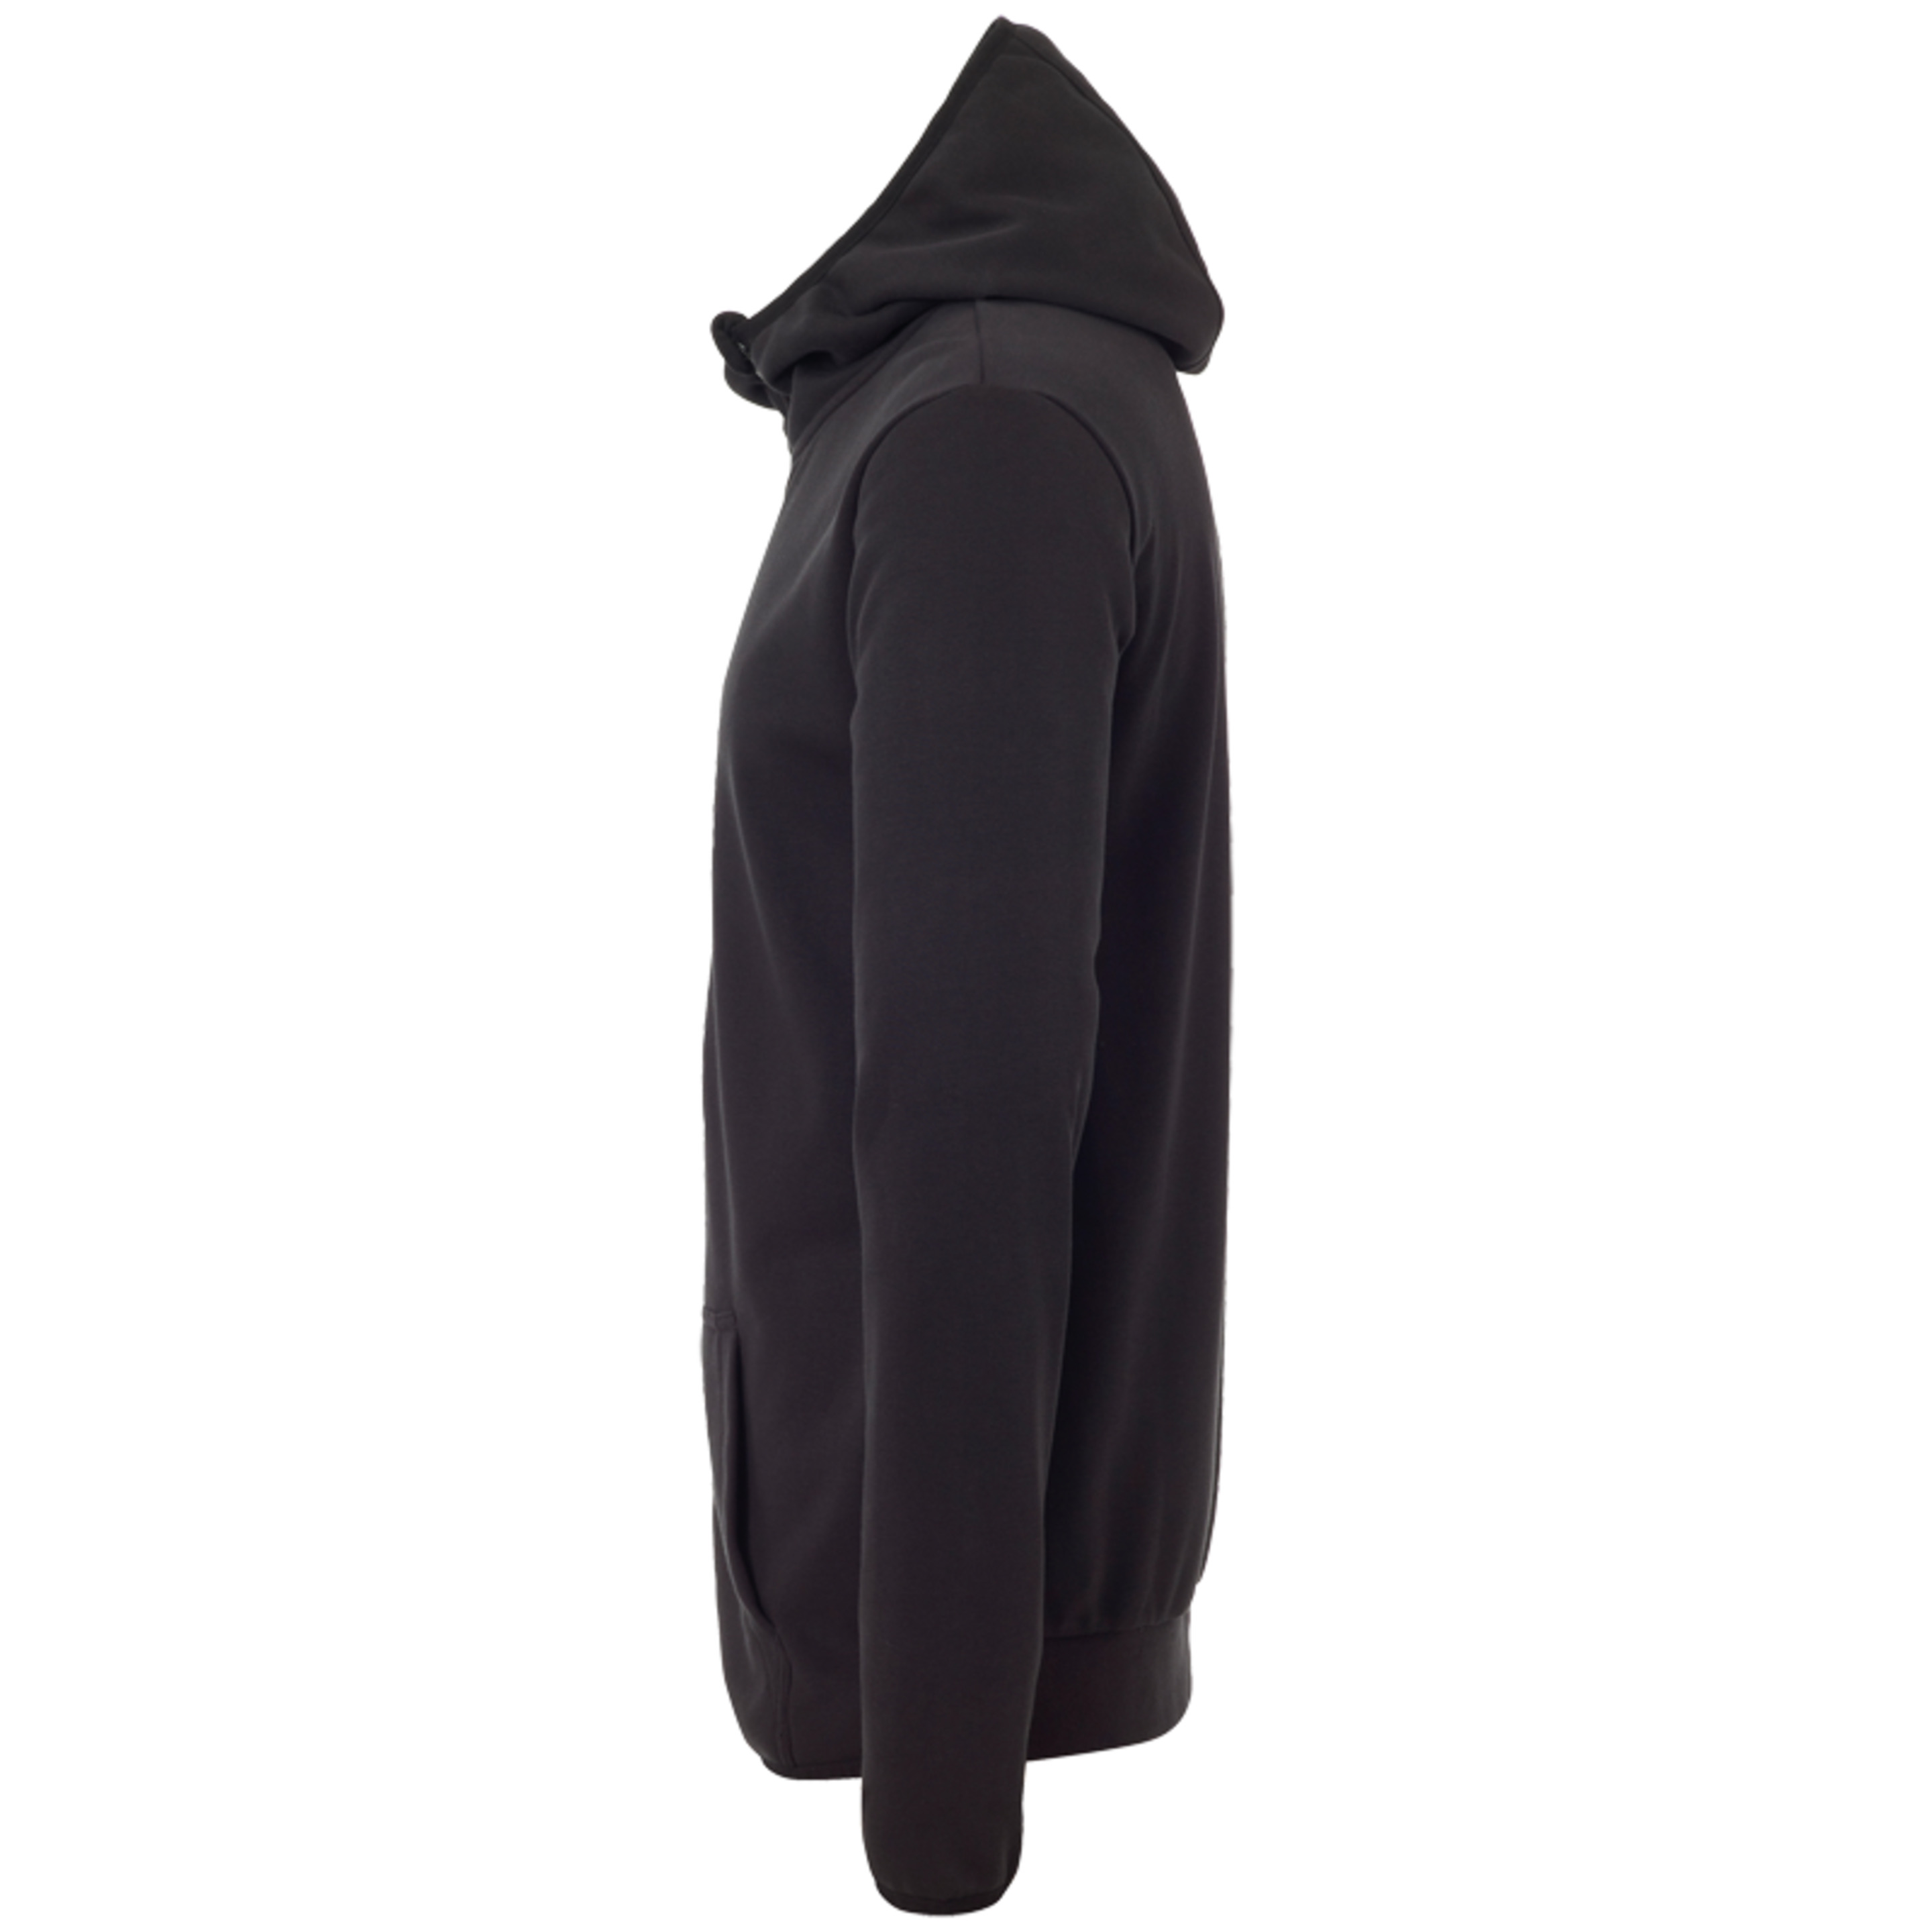 Essential Hood Jacket Black Uhlsport